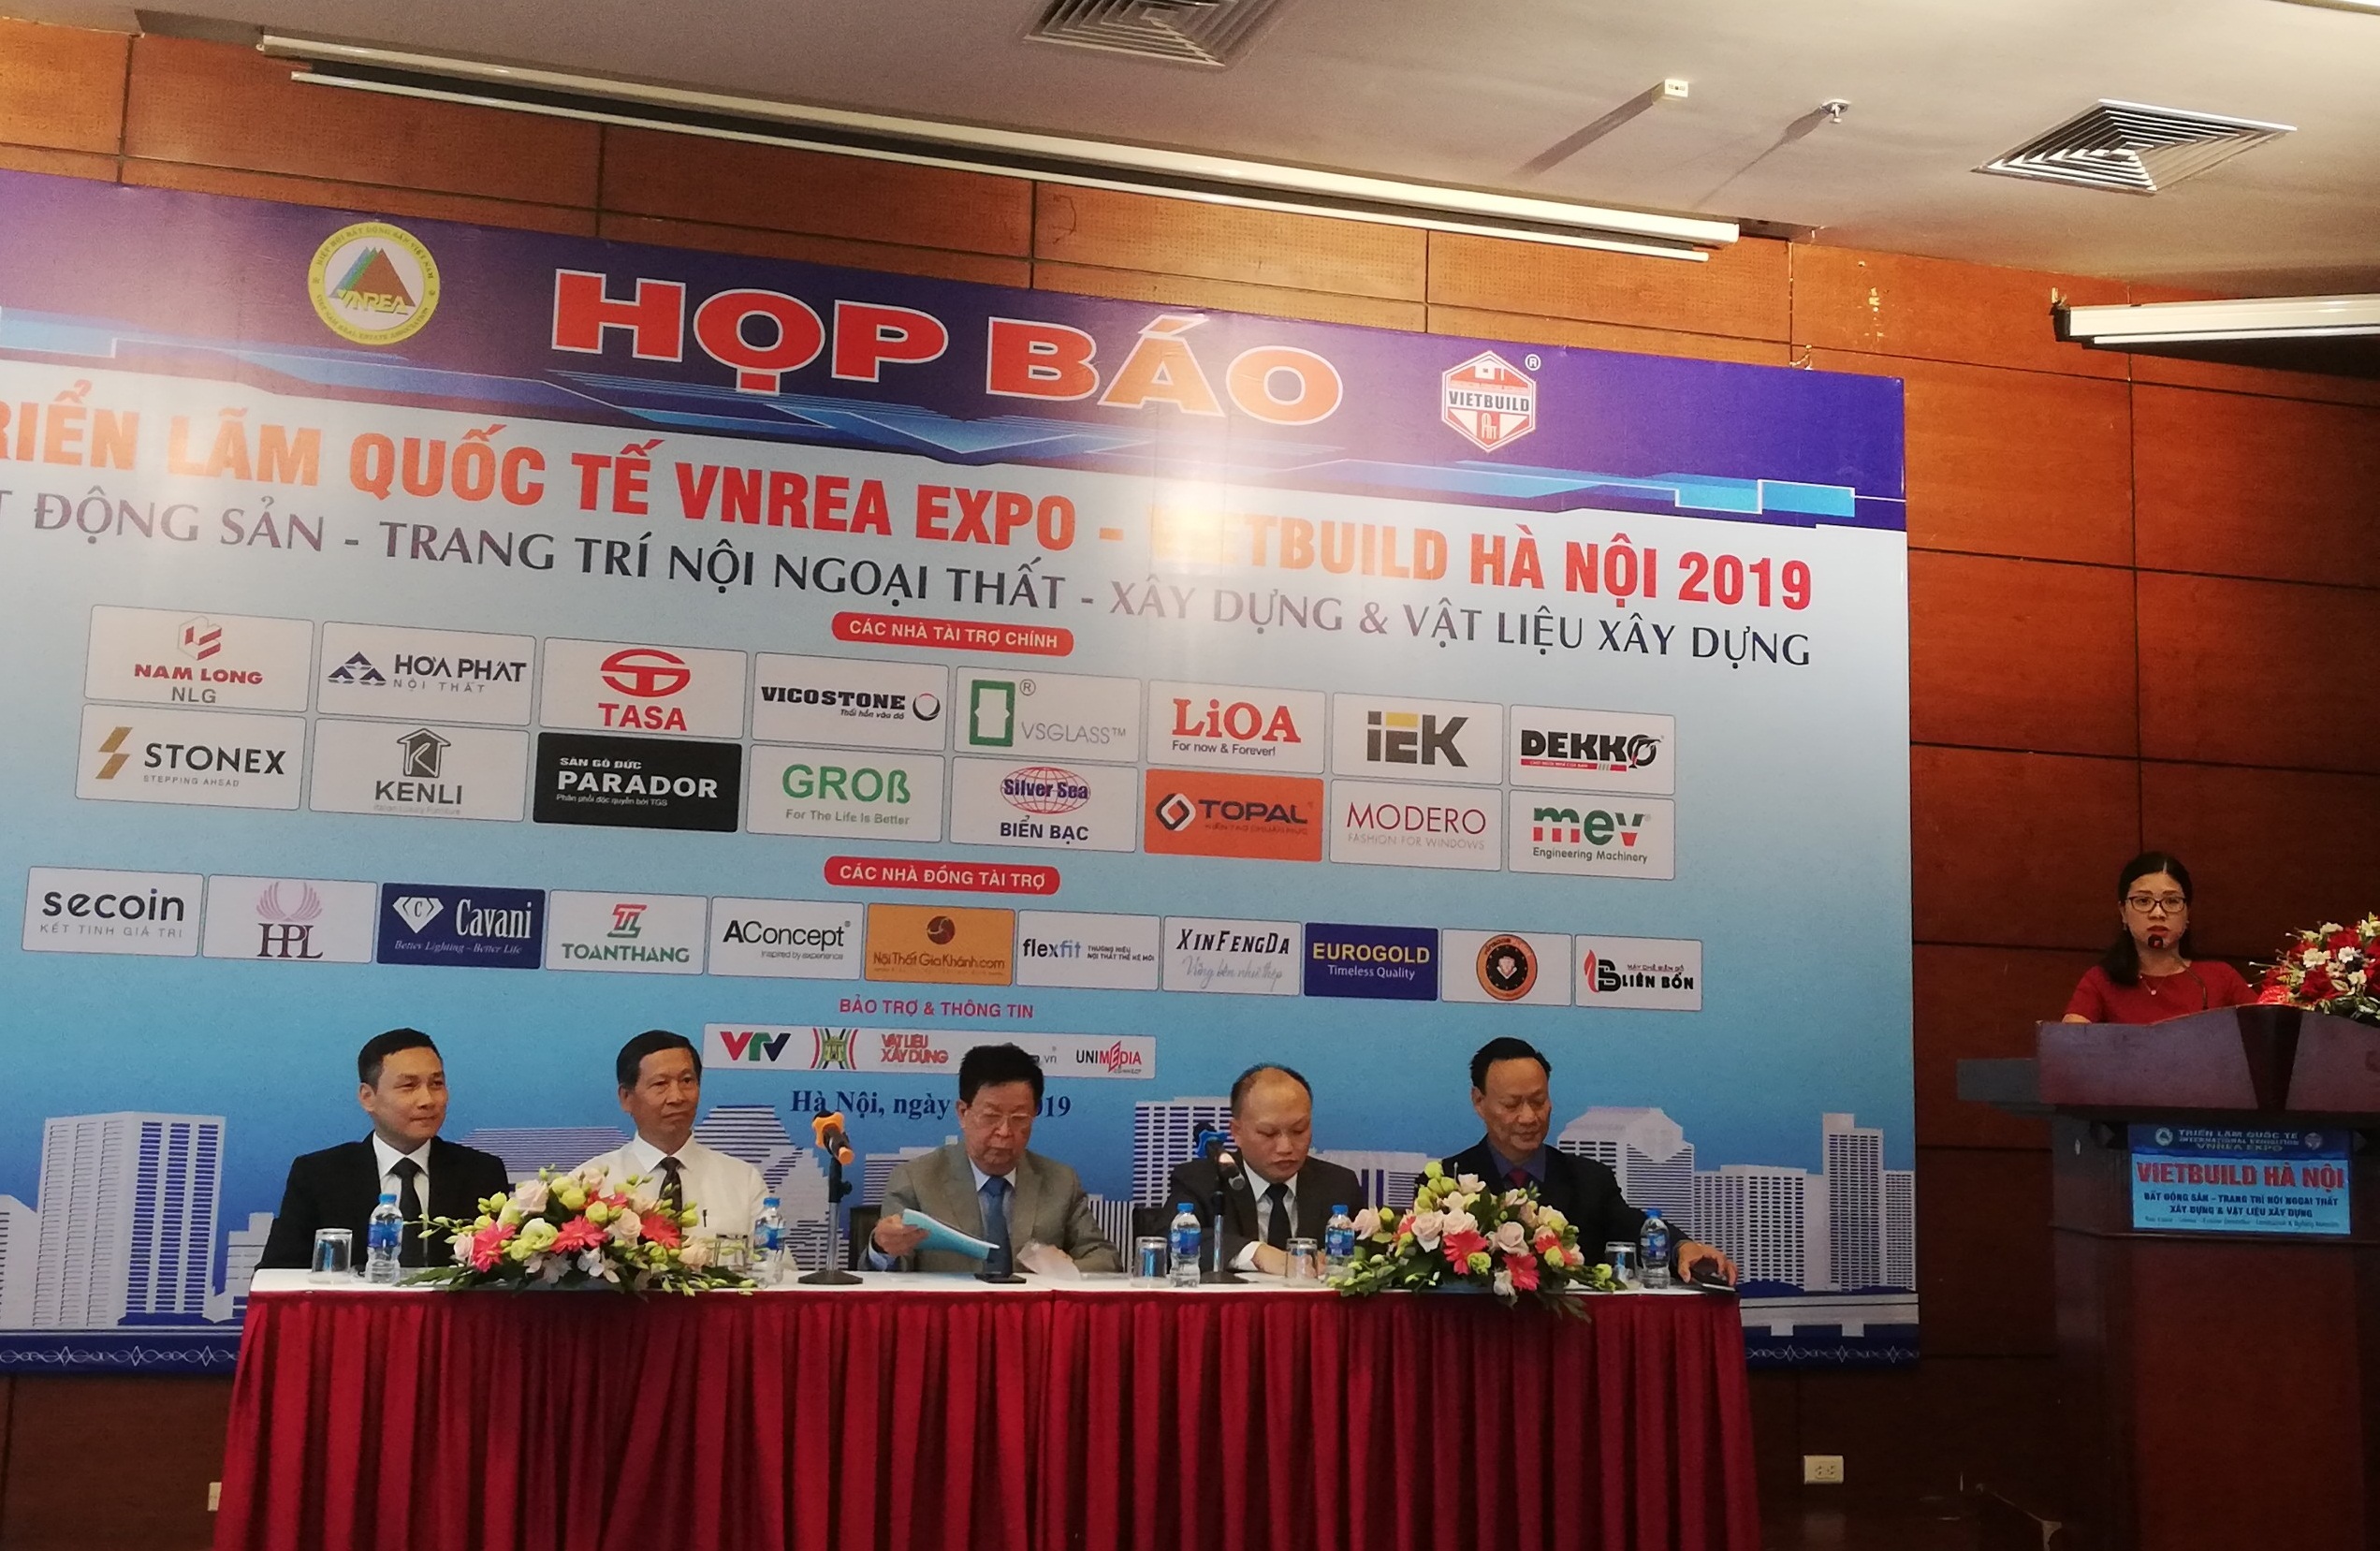 Triển lãm quốc tế Vietbuild Hà Nội 2019 lần thứ 2 khai mạc ngày 4/9